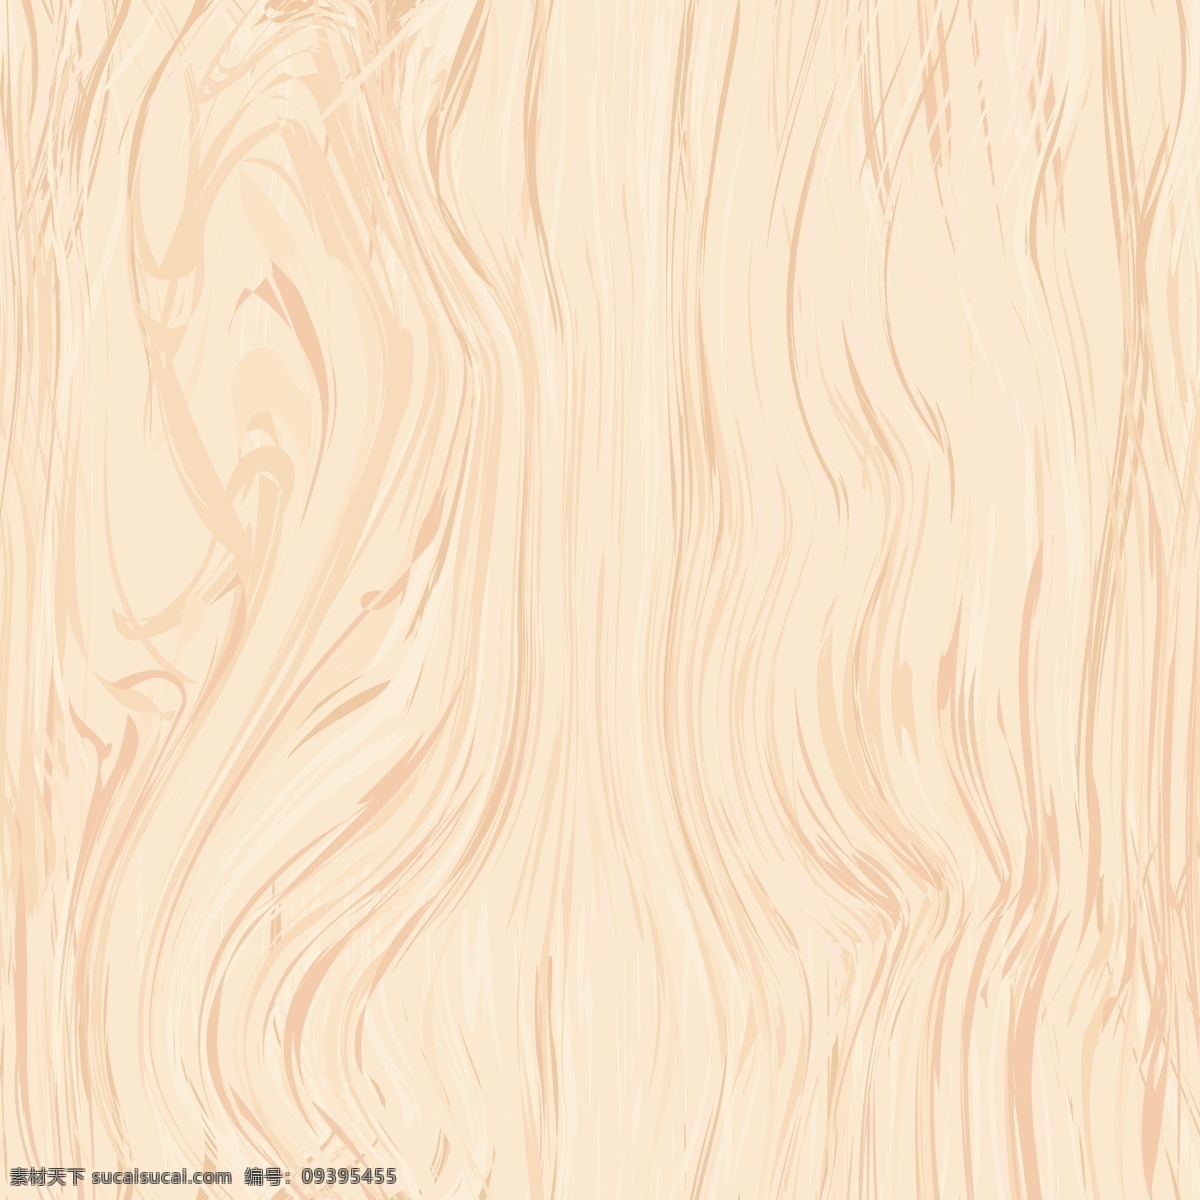 木质材质 木质 纹路 材质 3d 木料 木头 底纹 背景 底纹边框 背景底纹